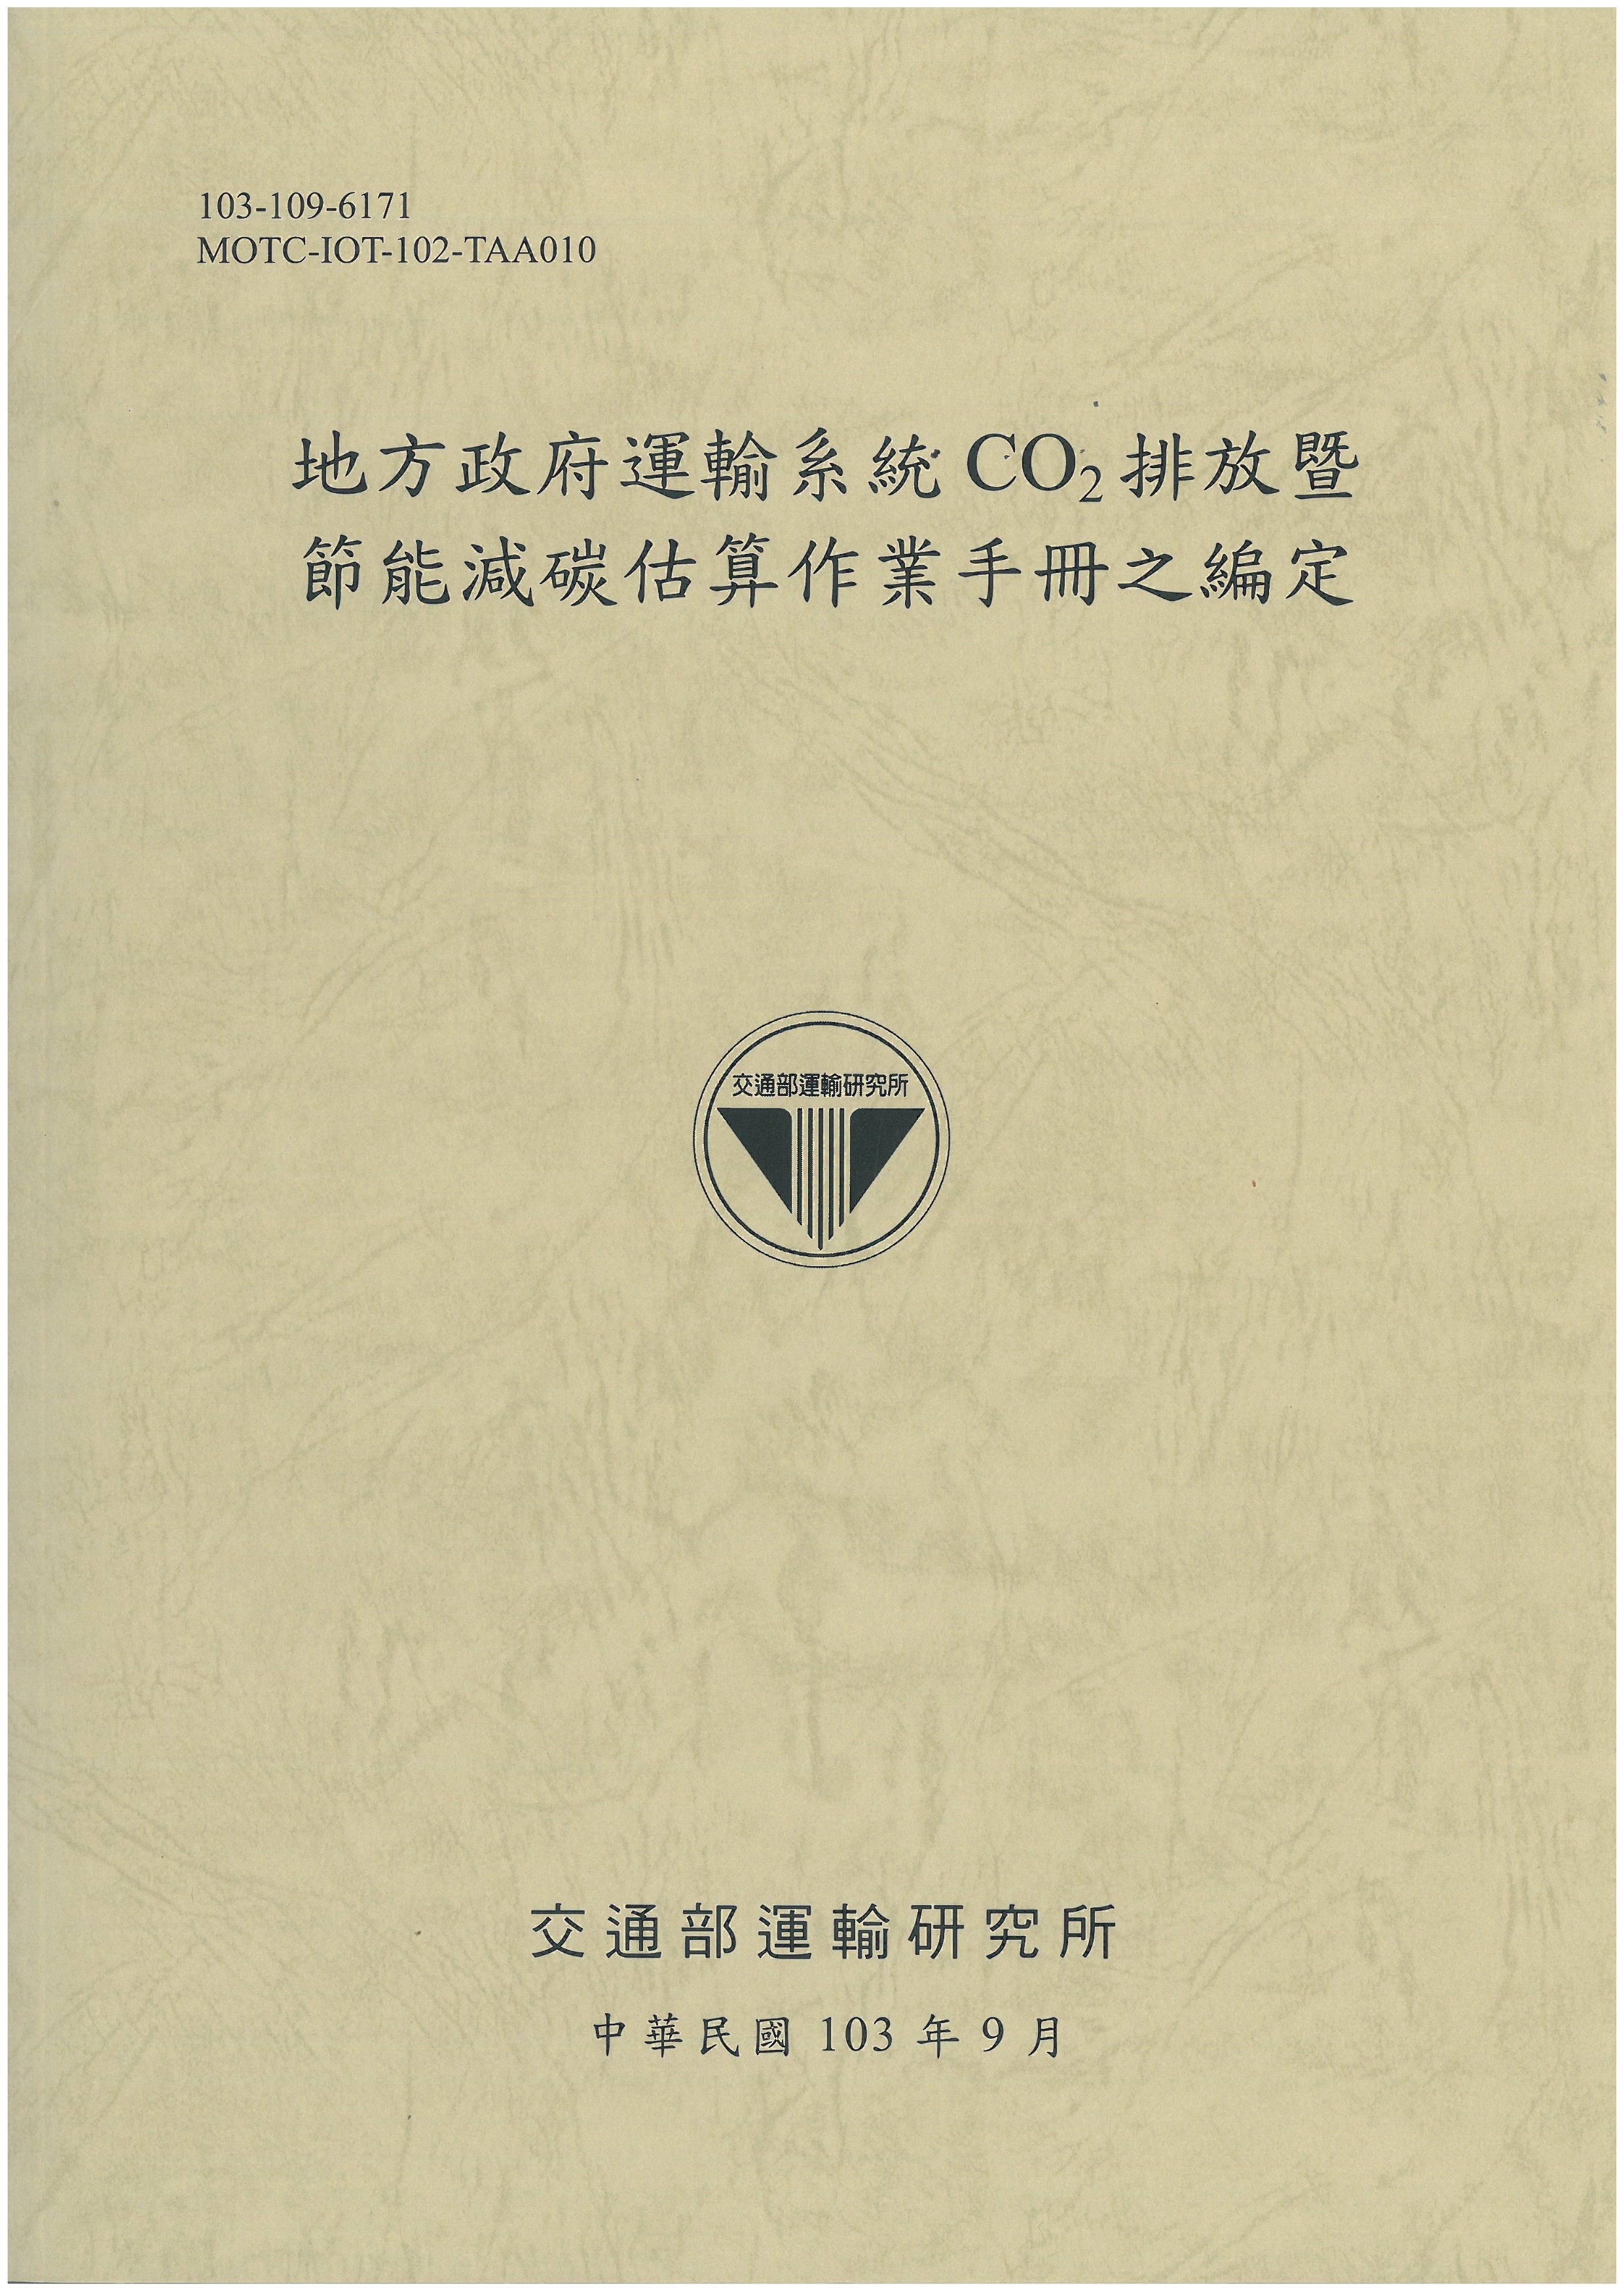 地方政府運輸系統CO2排放暨節能減碳估算作業手冊之編定